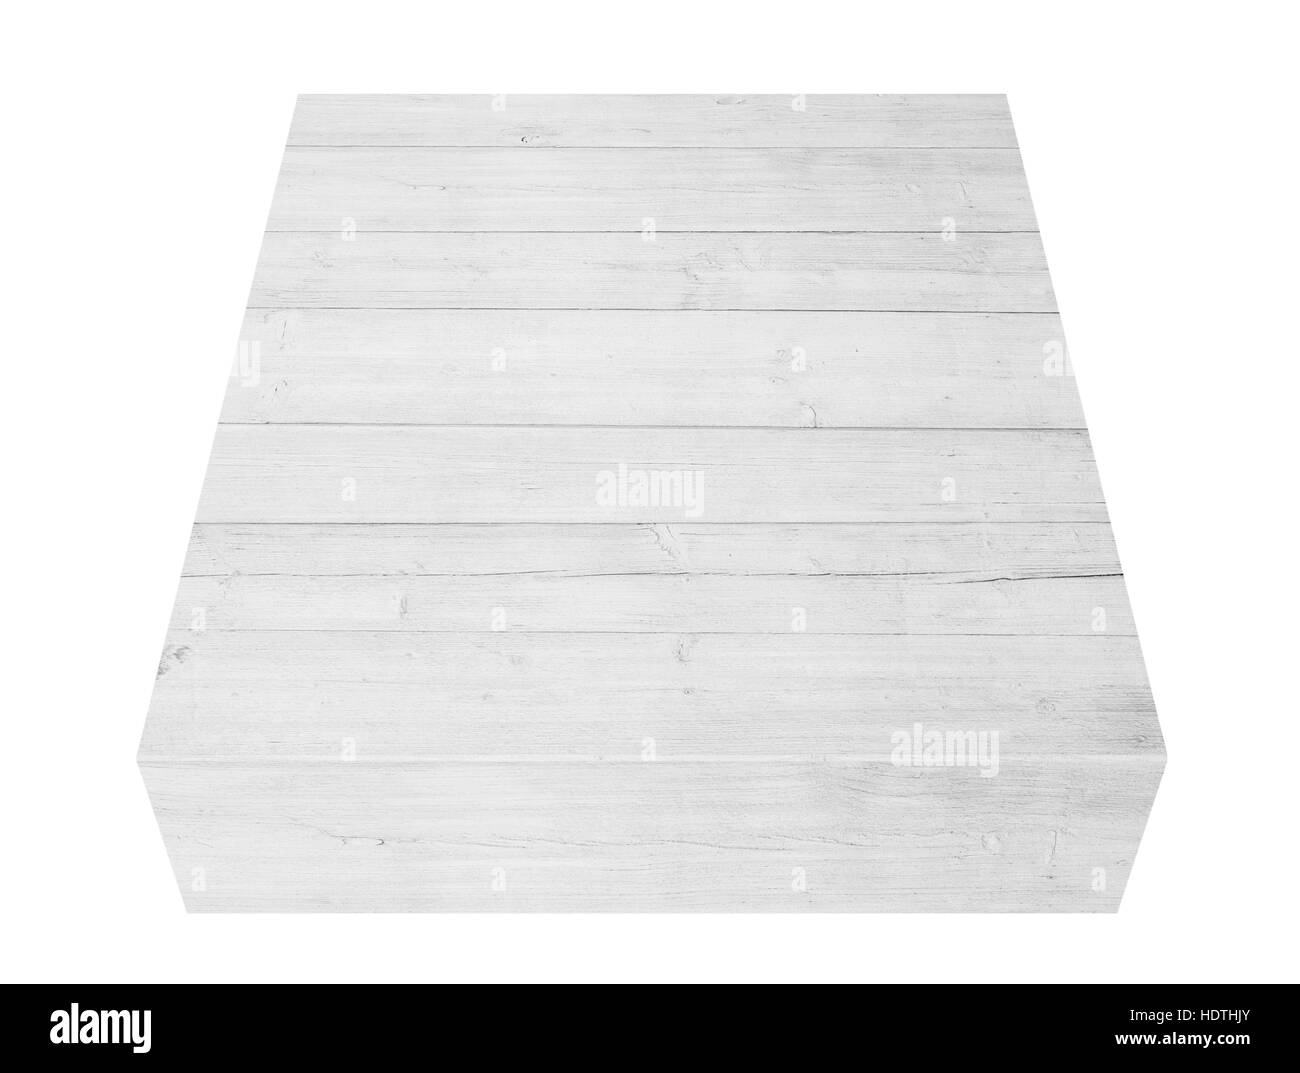 White tavole di legno, box o scheda isolato su sfondo Foto Stock